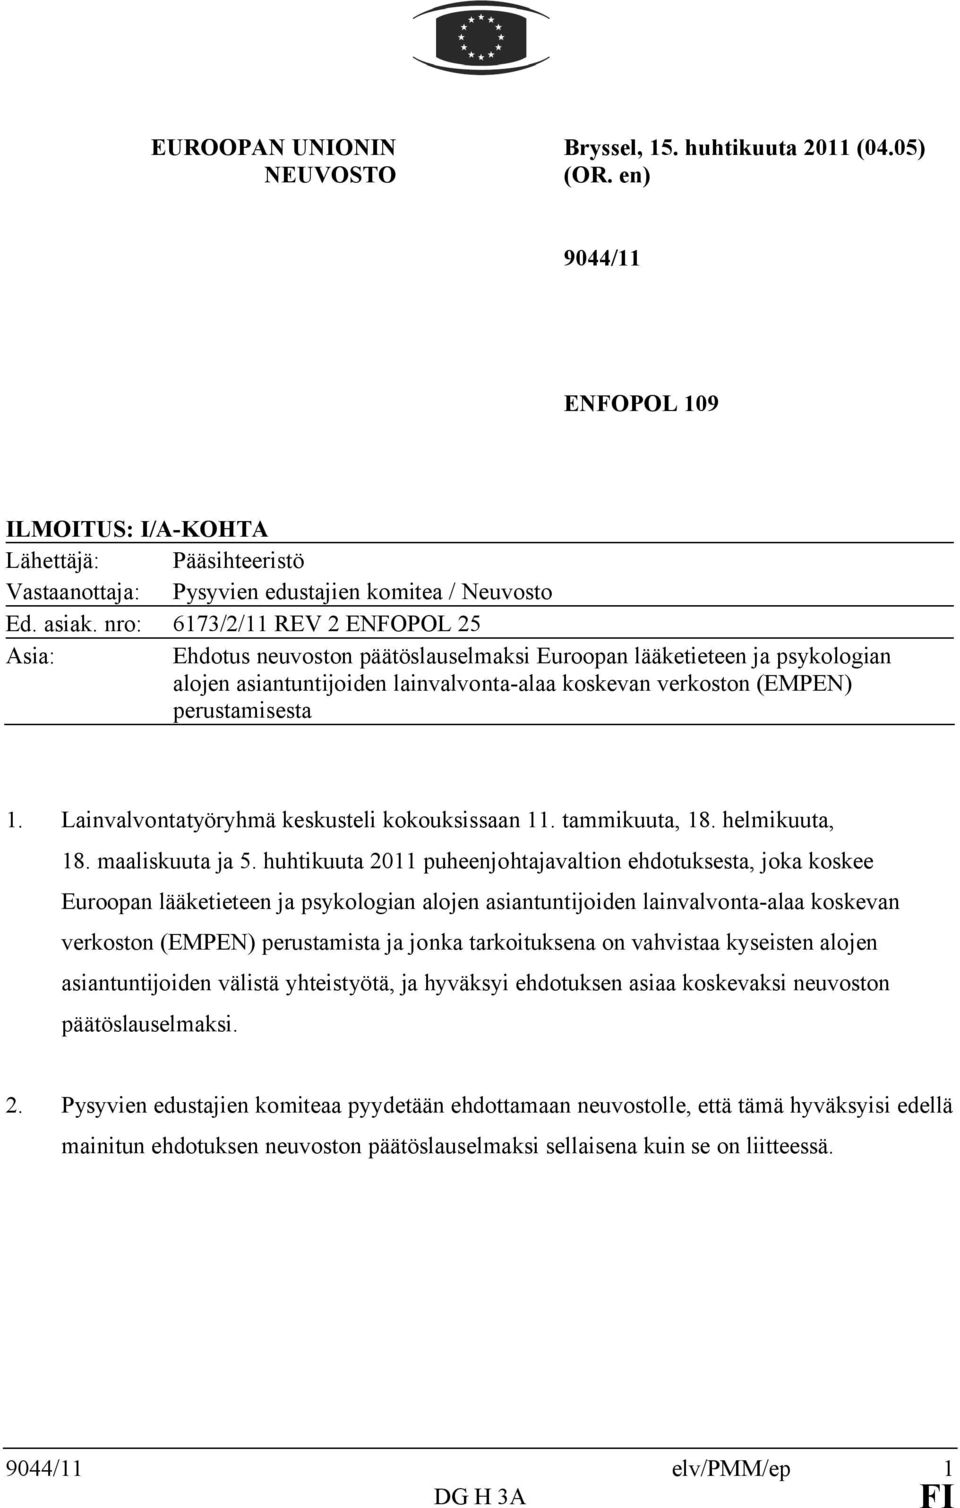 nro: 6173/2/11 REV 2 ENFOPOL 25 Asia: Ehdotus neuvoston päätöslauselmaksi Euroopan lääketieteen ja psykologian alojen asiantuntijoiden lainvalvonta-alaa koskevan verkoston (EMPEN) perustamisesta 1.